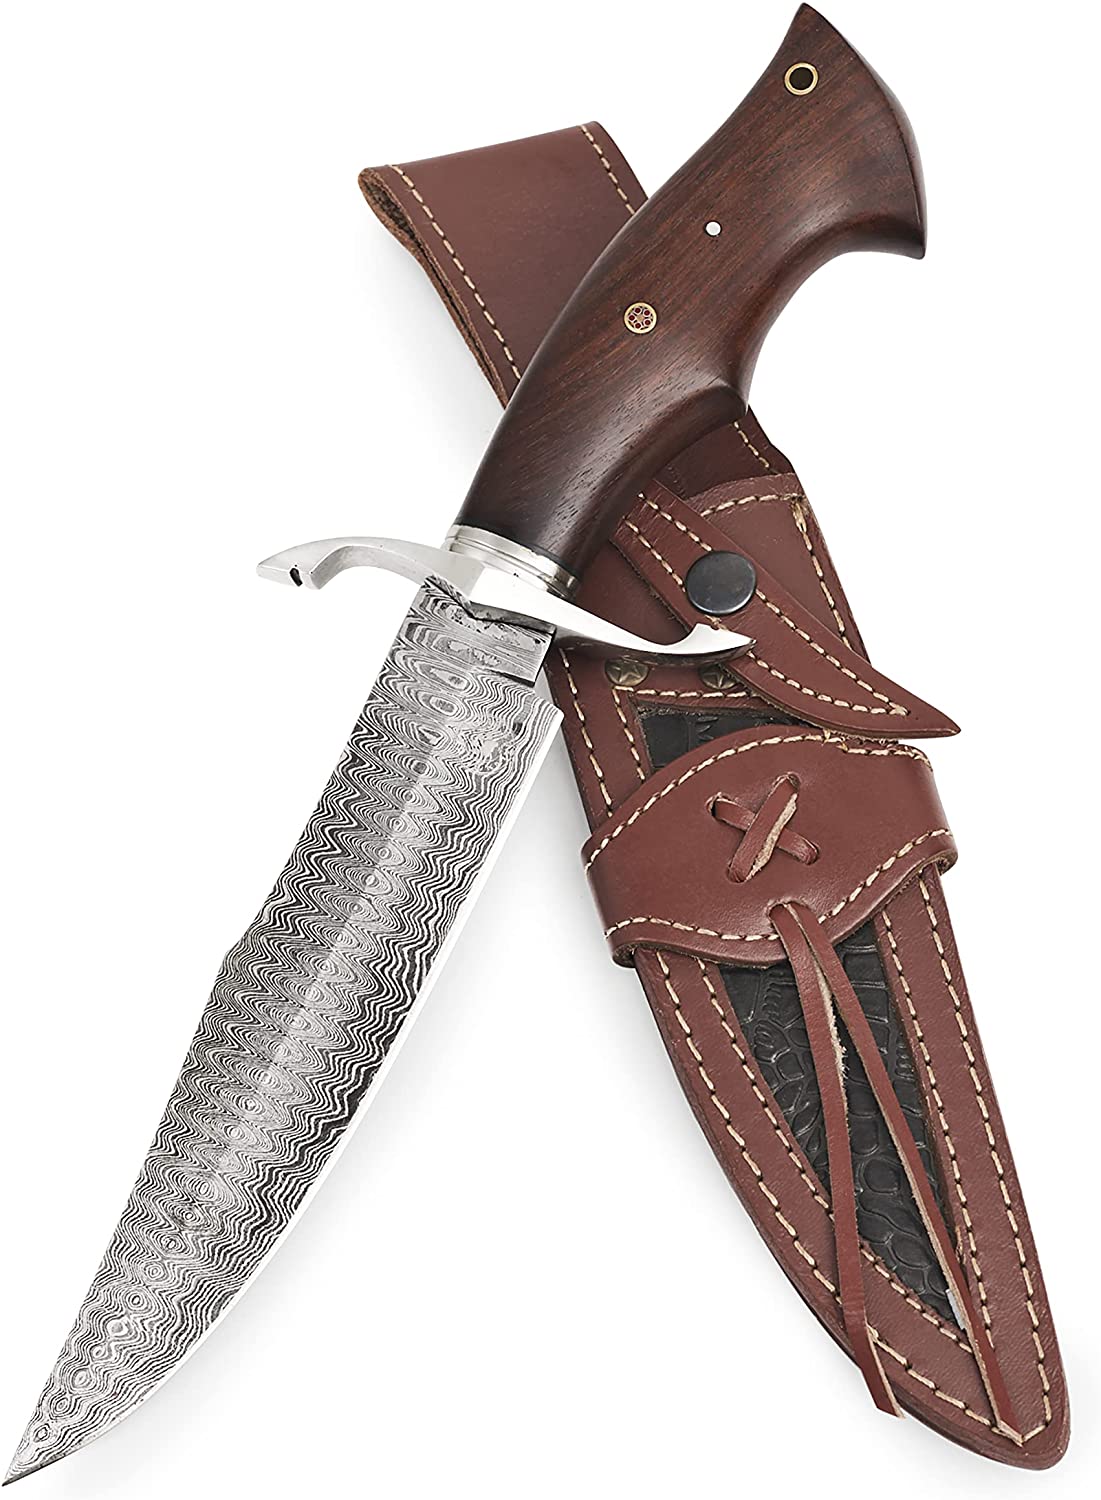 RK-466 Handmade Damascus Hunting Bobcat Knife For Sale